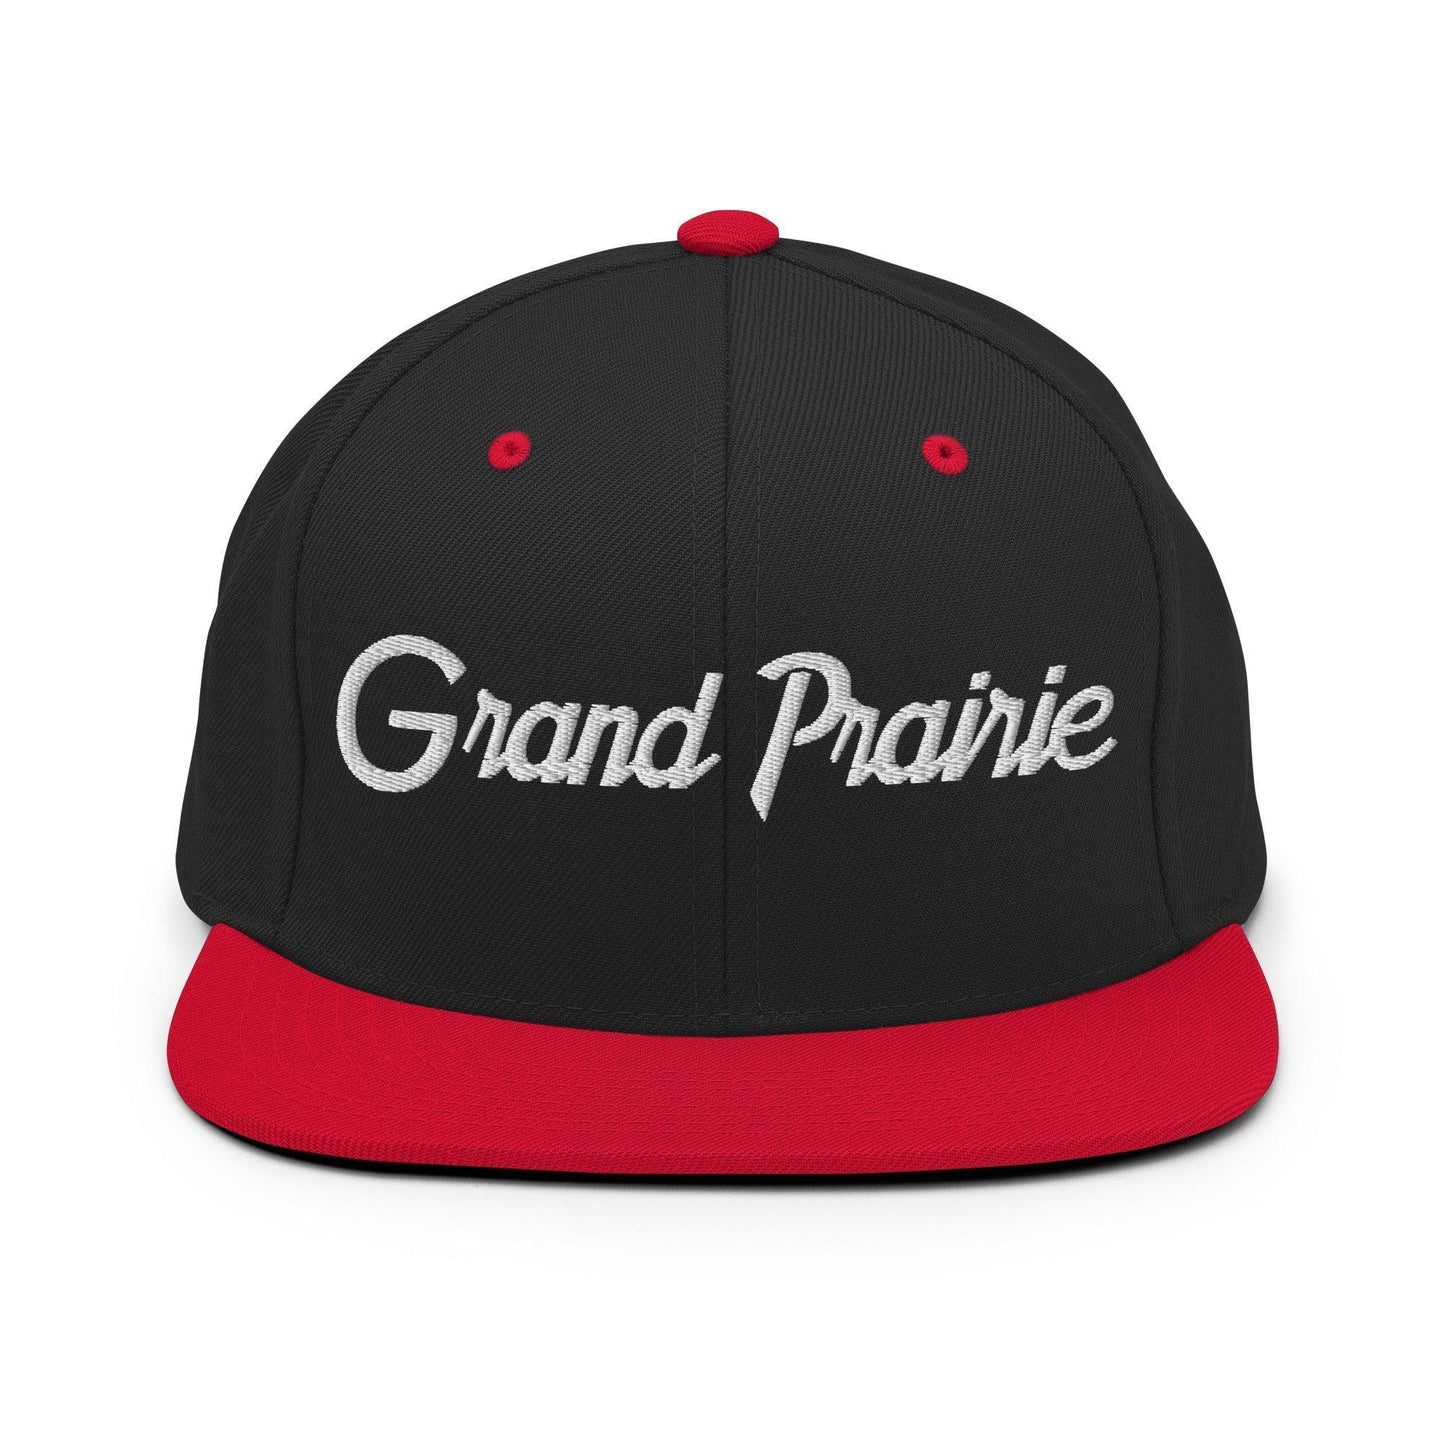 Grand Prairie Script Snapback Hat Black Red